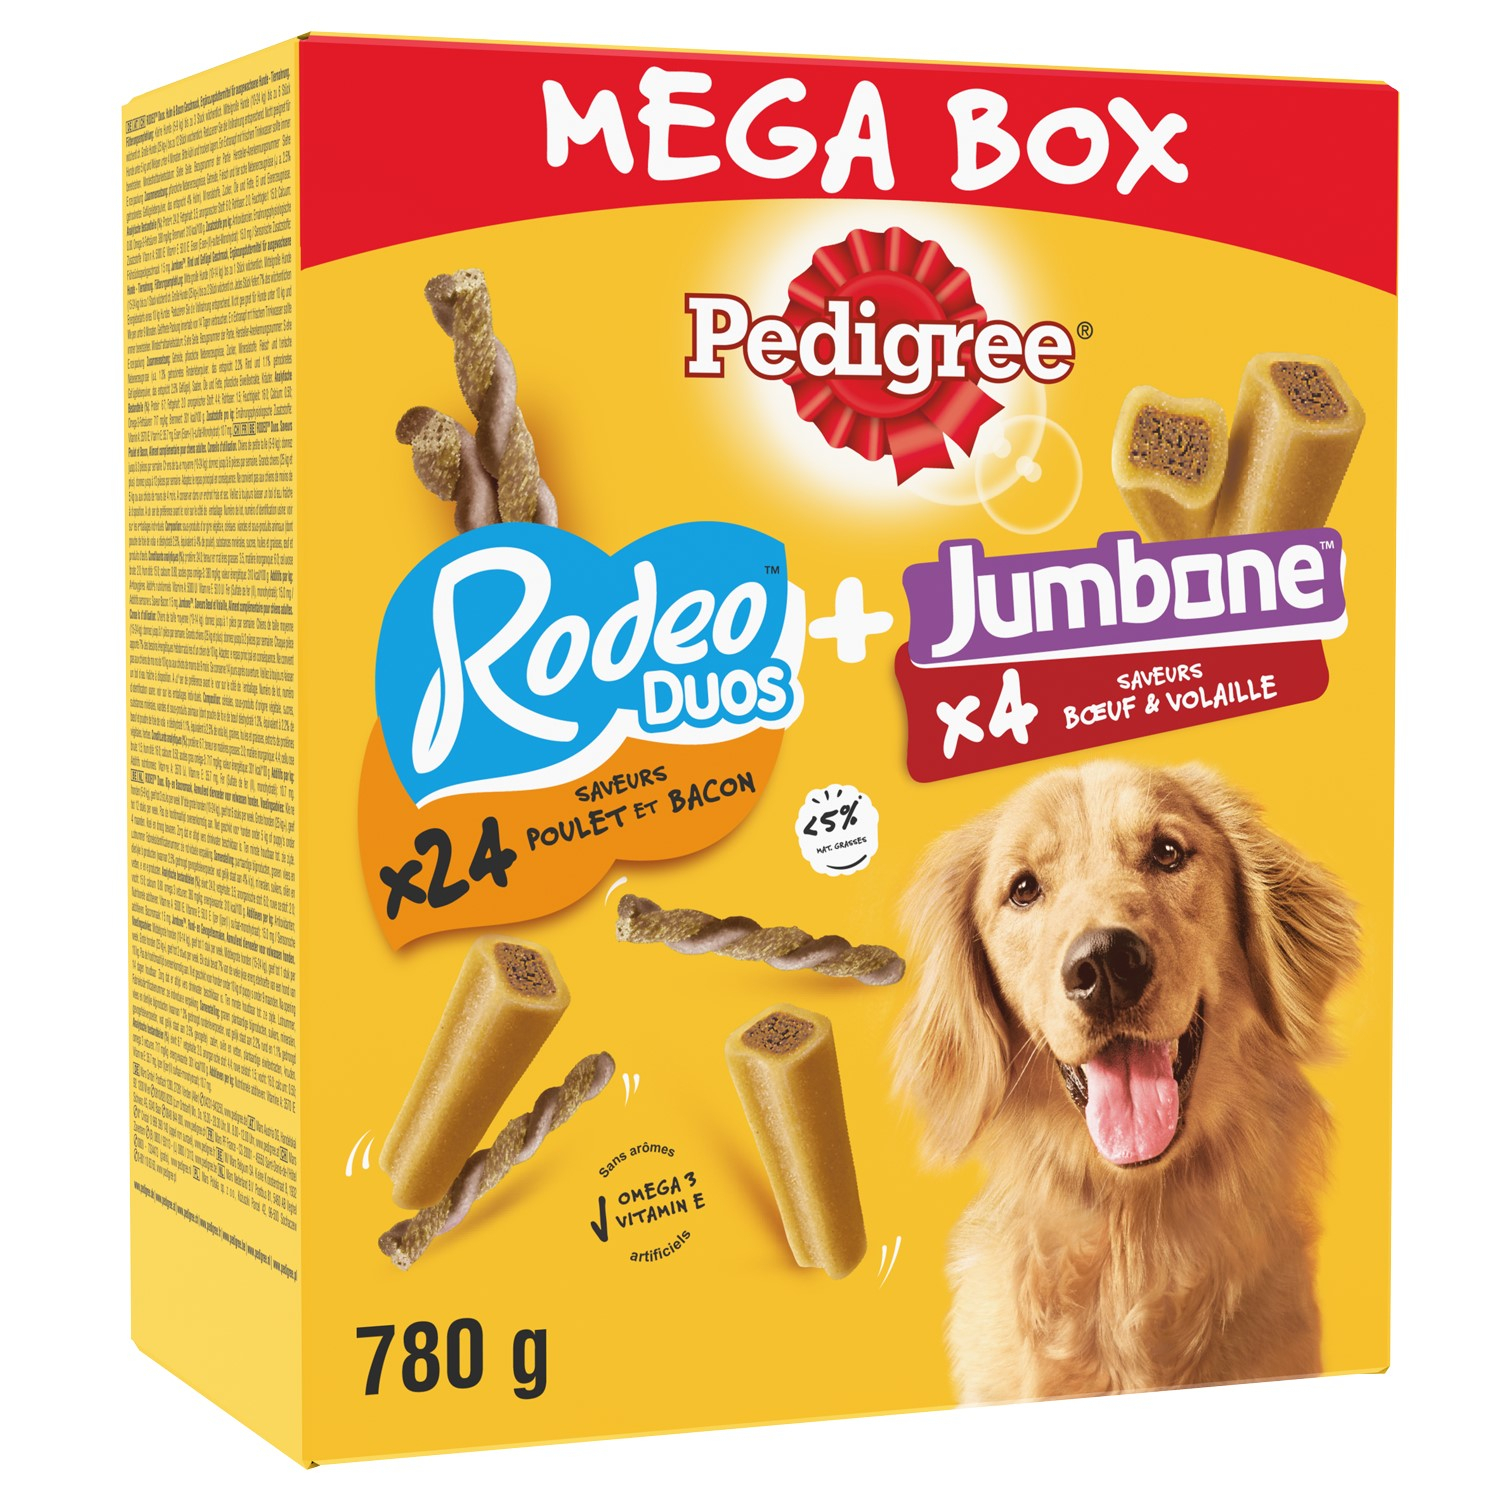 PEDIGREE Mega Box RODEO DUOS + JUMBONE Pack mega de snacks para perros